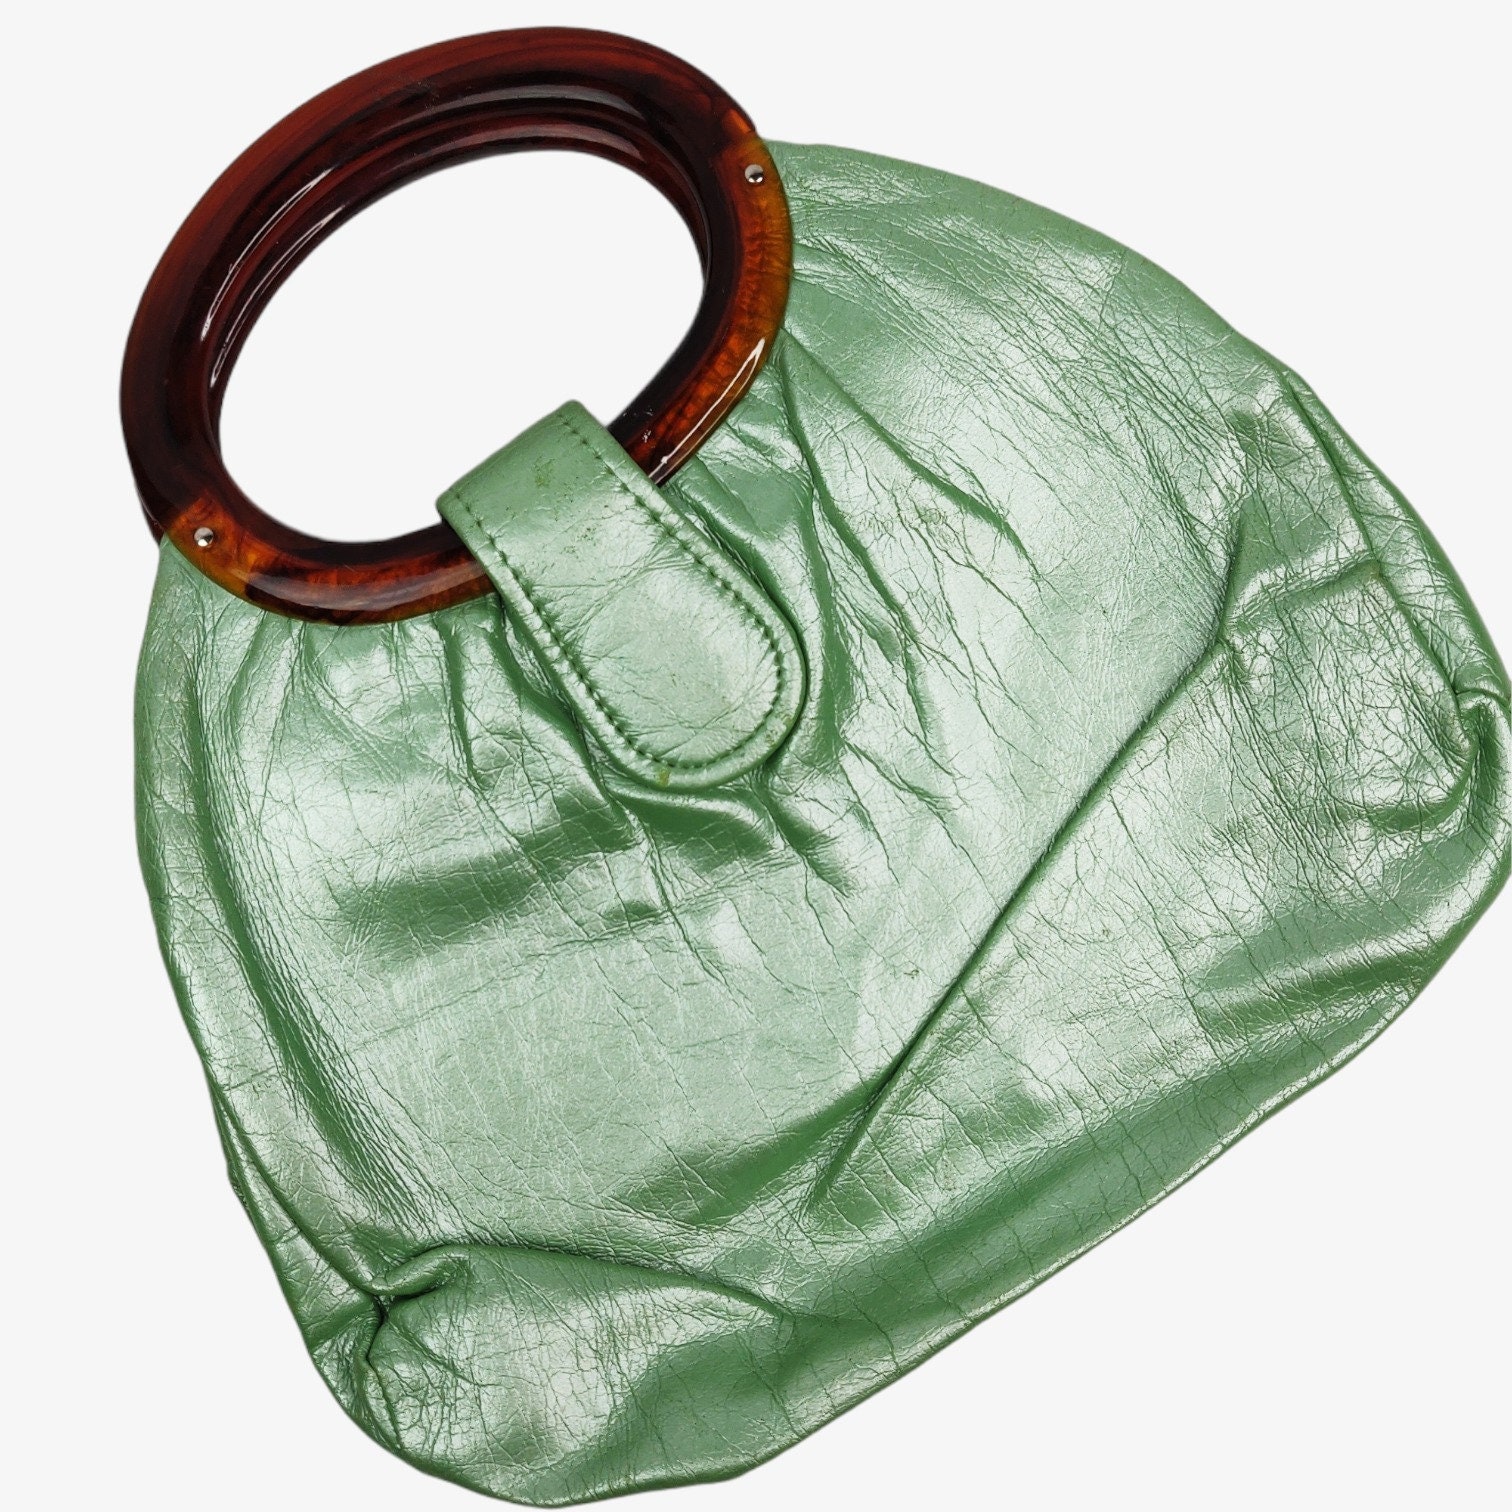 HK jelly toy boy Hermes design bag vintage green